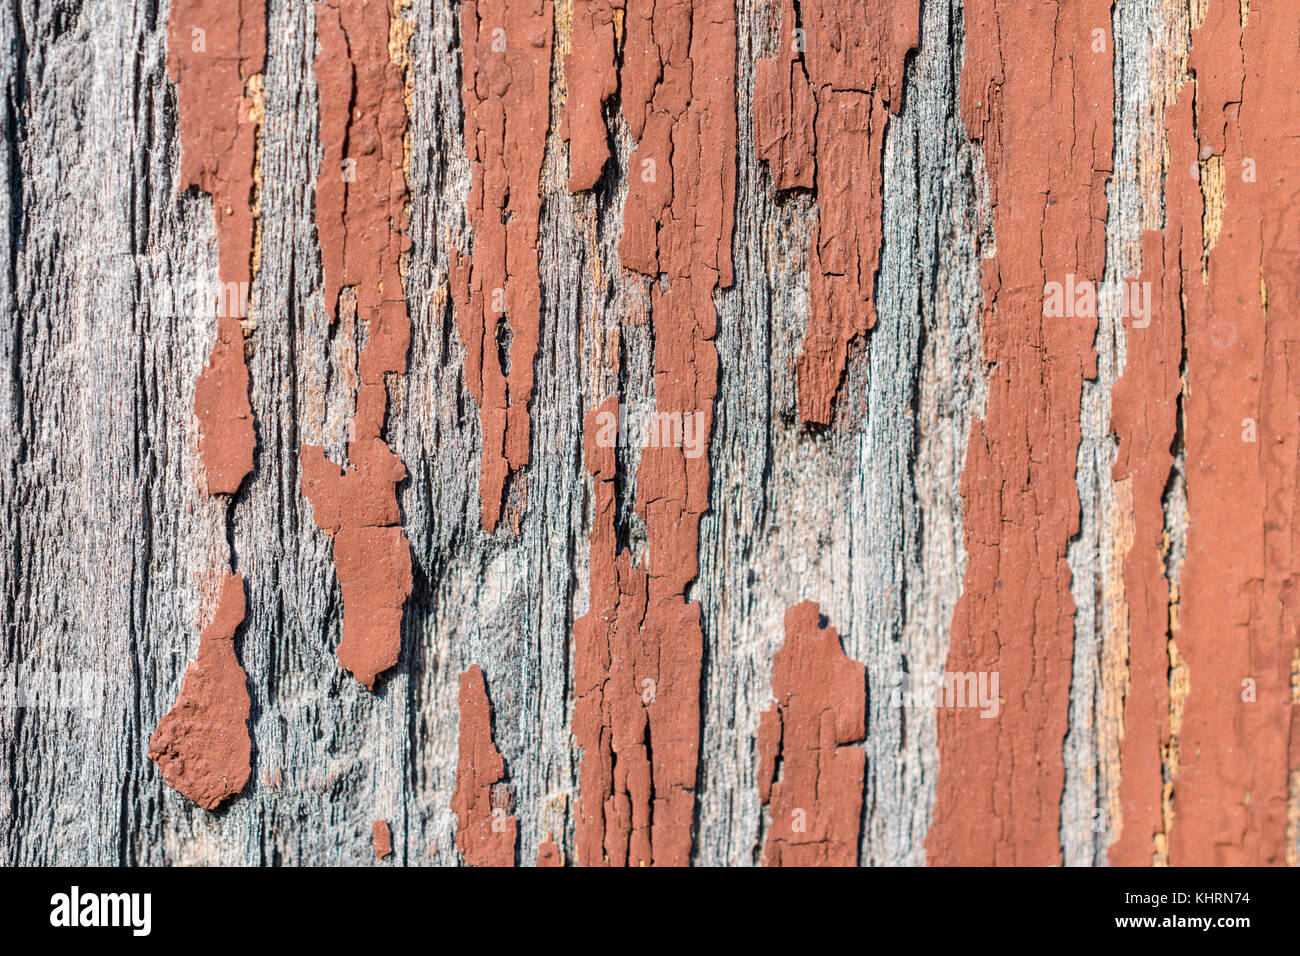 La texture de la peinture marron en ruine sur le mur en bois Banque D'Images